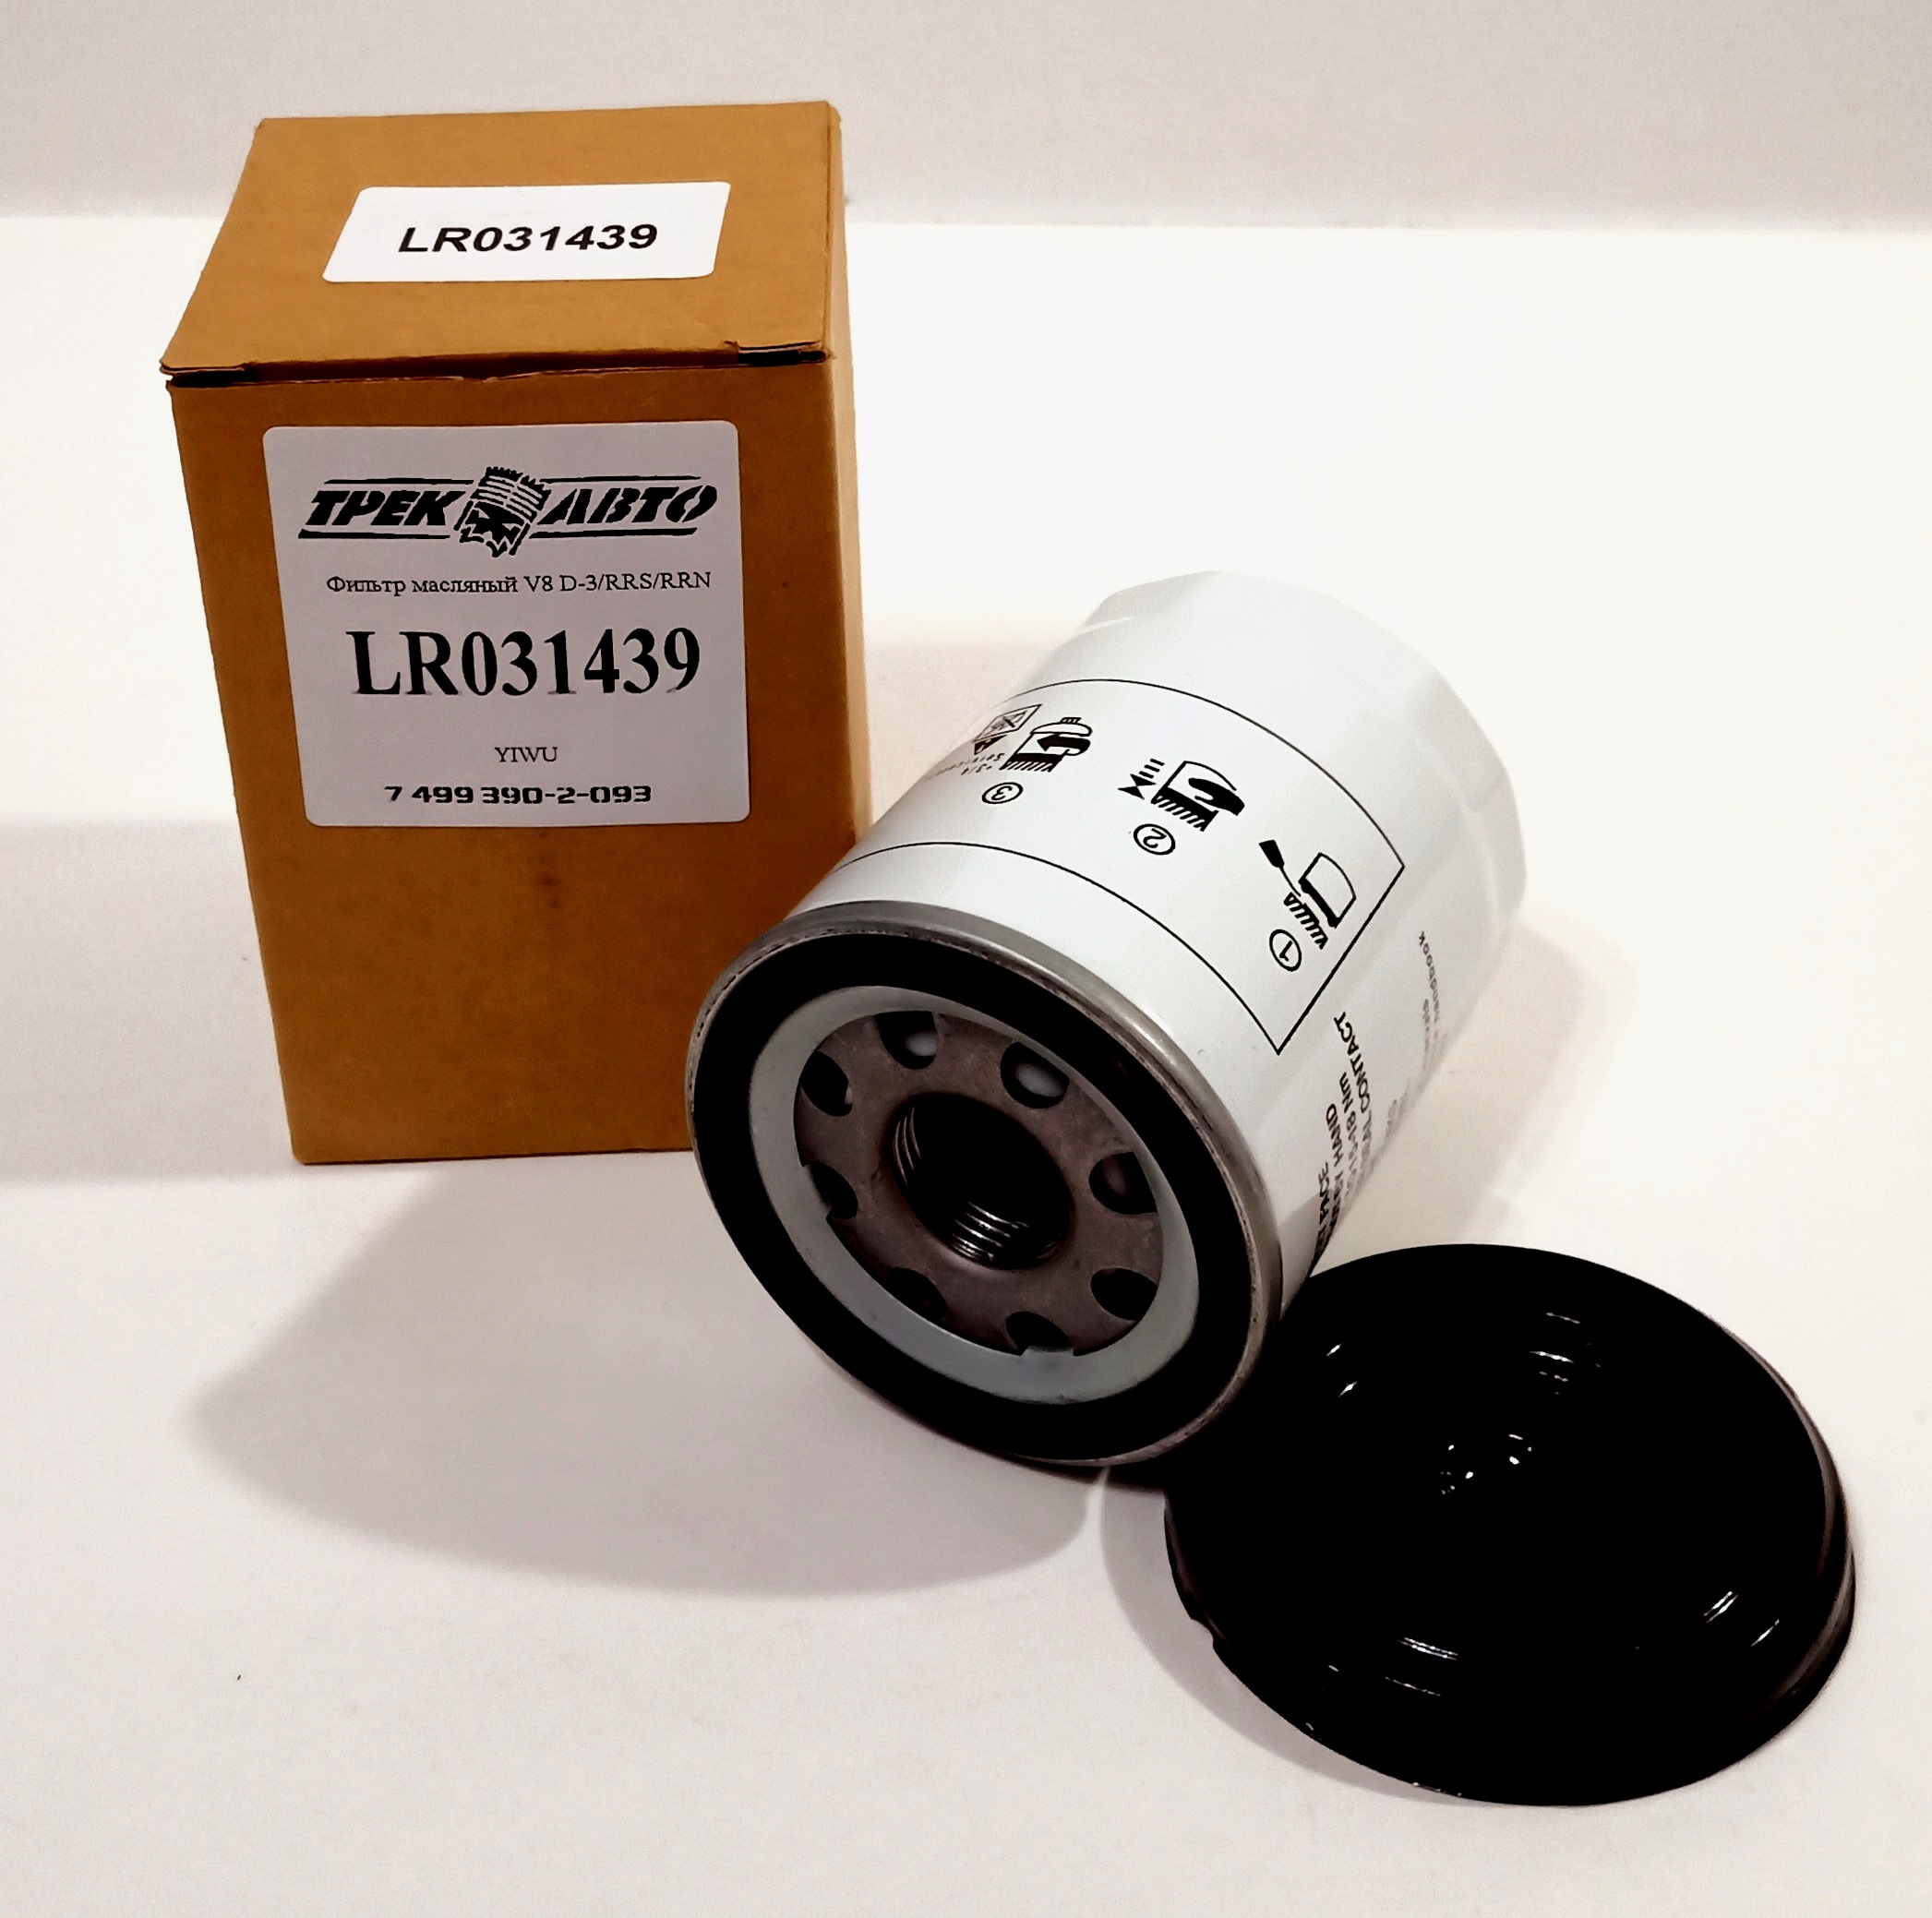 Фильтр масляный V8 D-3/RRS/RRN (LR007160||YIWU)